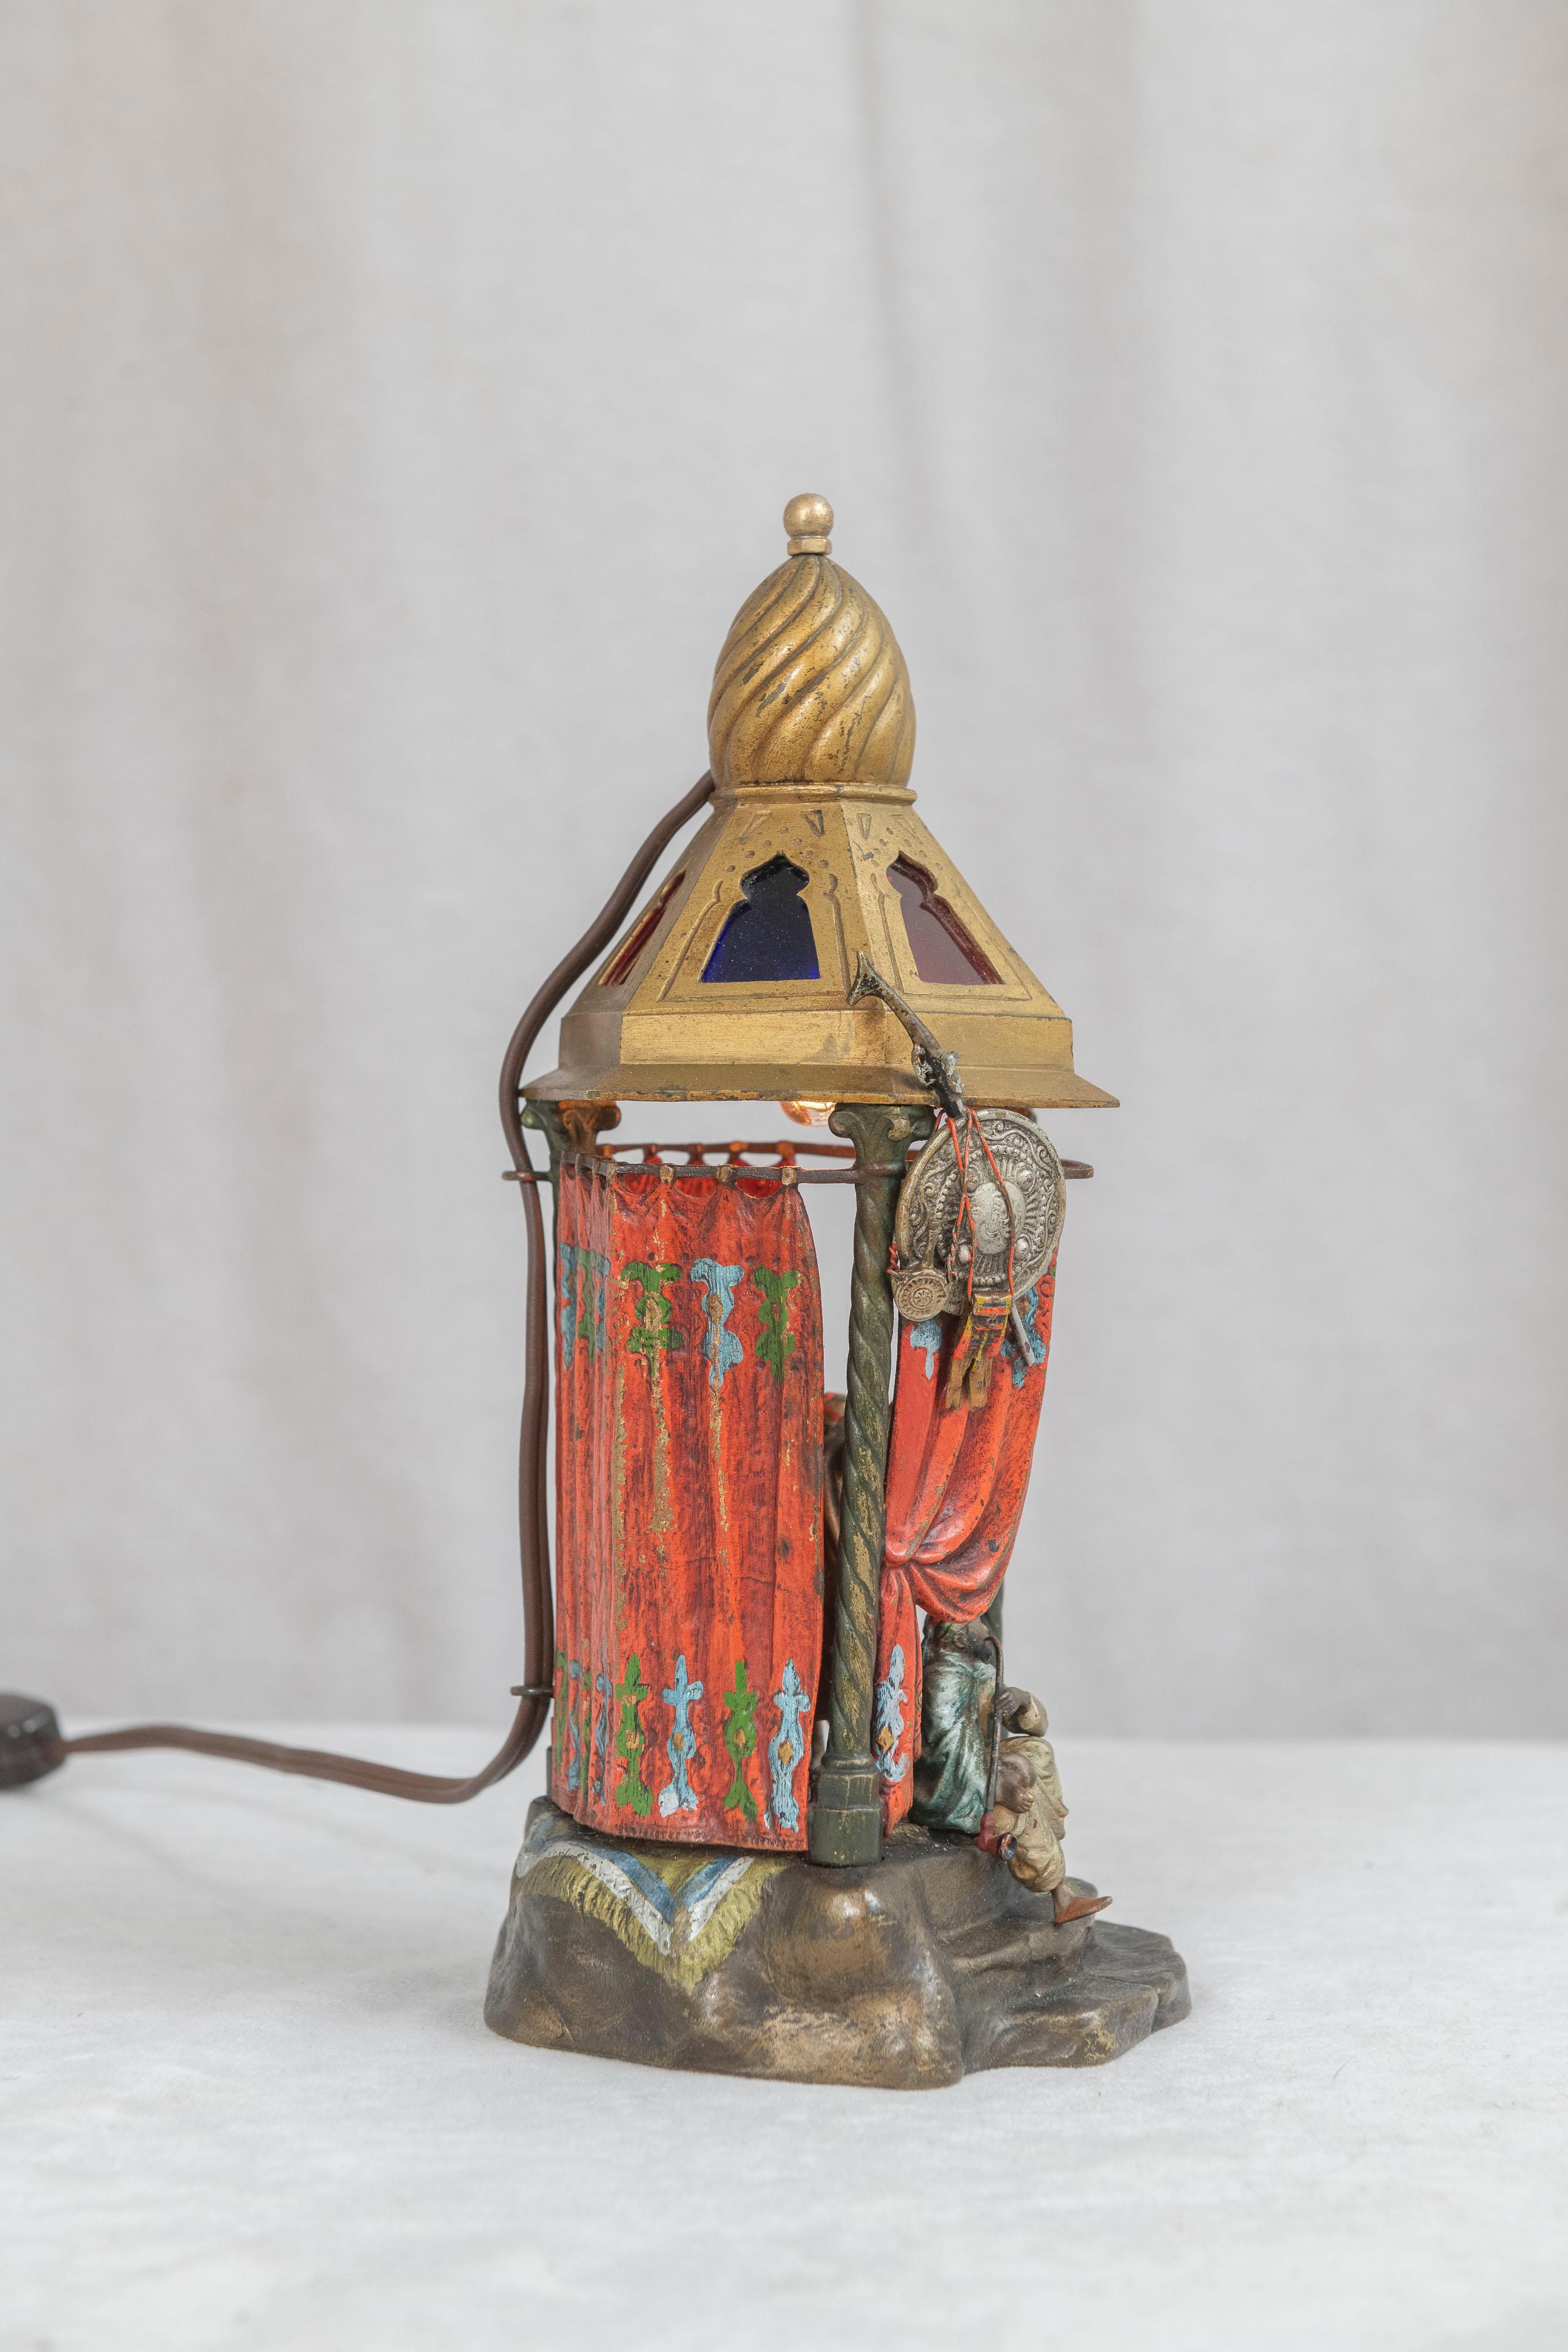 Orientalische österreichische Kaltbemalte Bronze-Lampe mit 2 Figuren in einem kleinen Raum (Gebeizt)